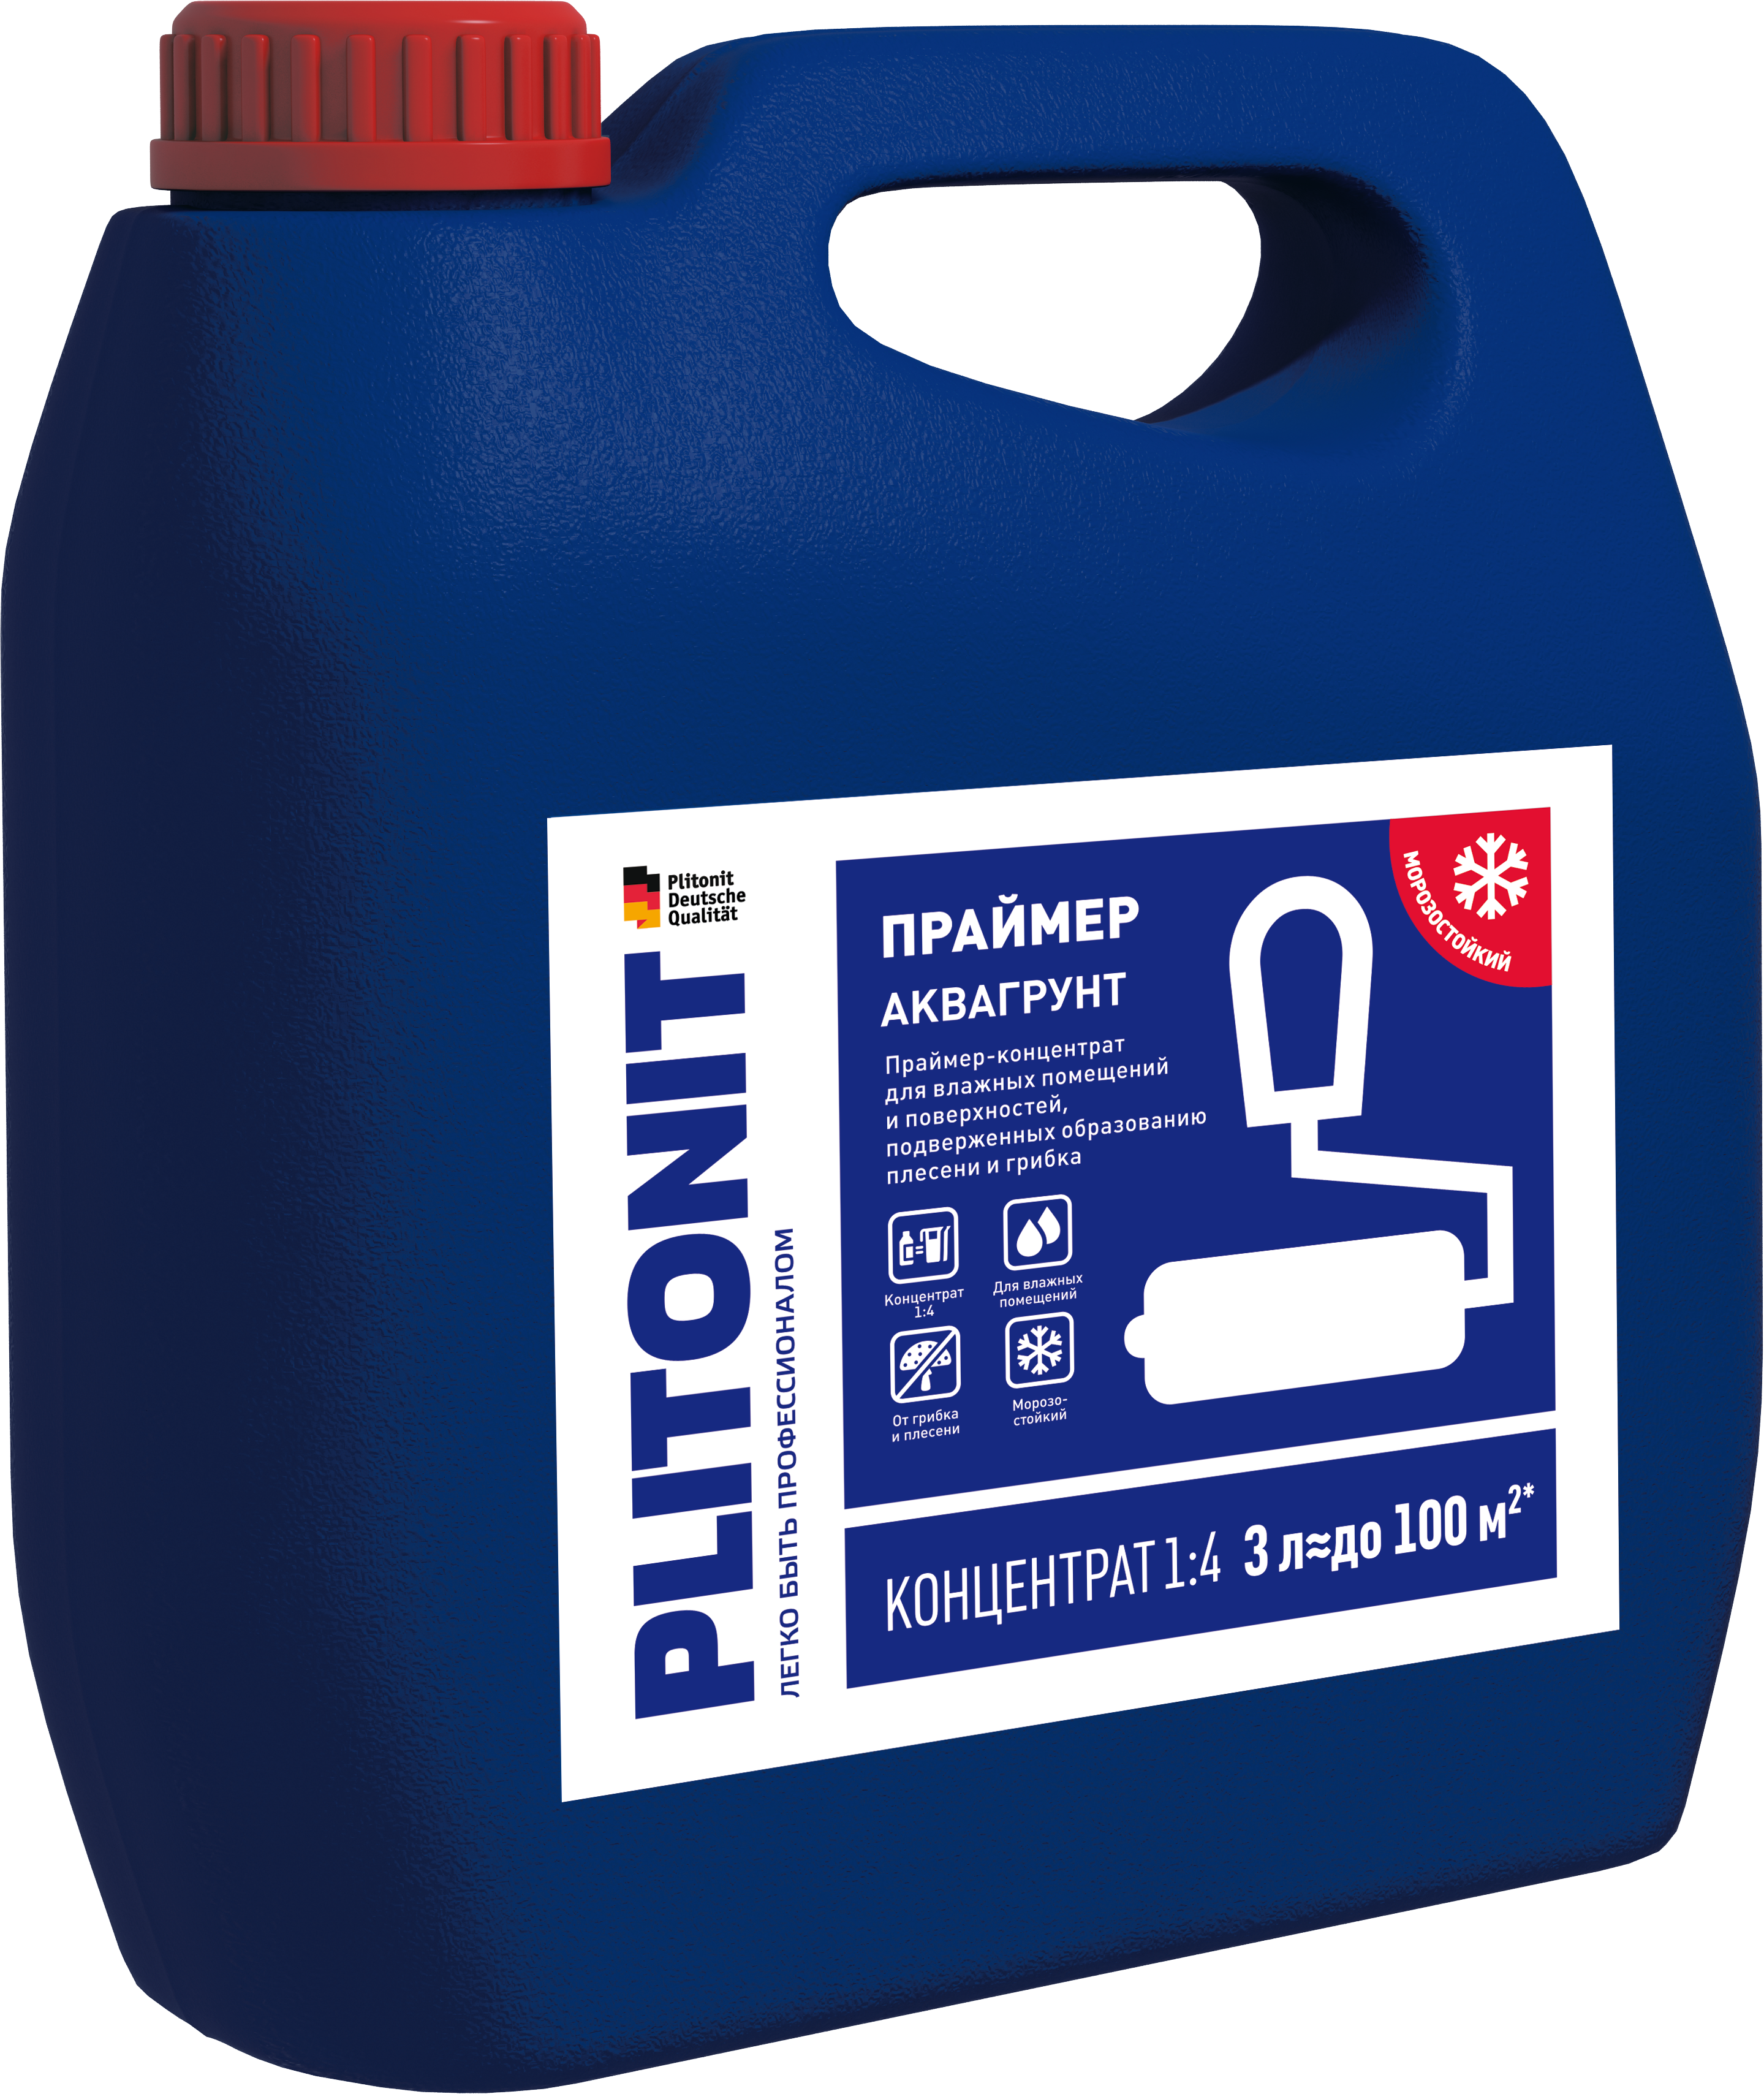 PLITONIT АкваГрунт Праймер-концентрат 1:4 акрилатный для влажных помещений 3 кг  (144шт/подд.)